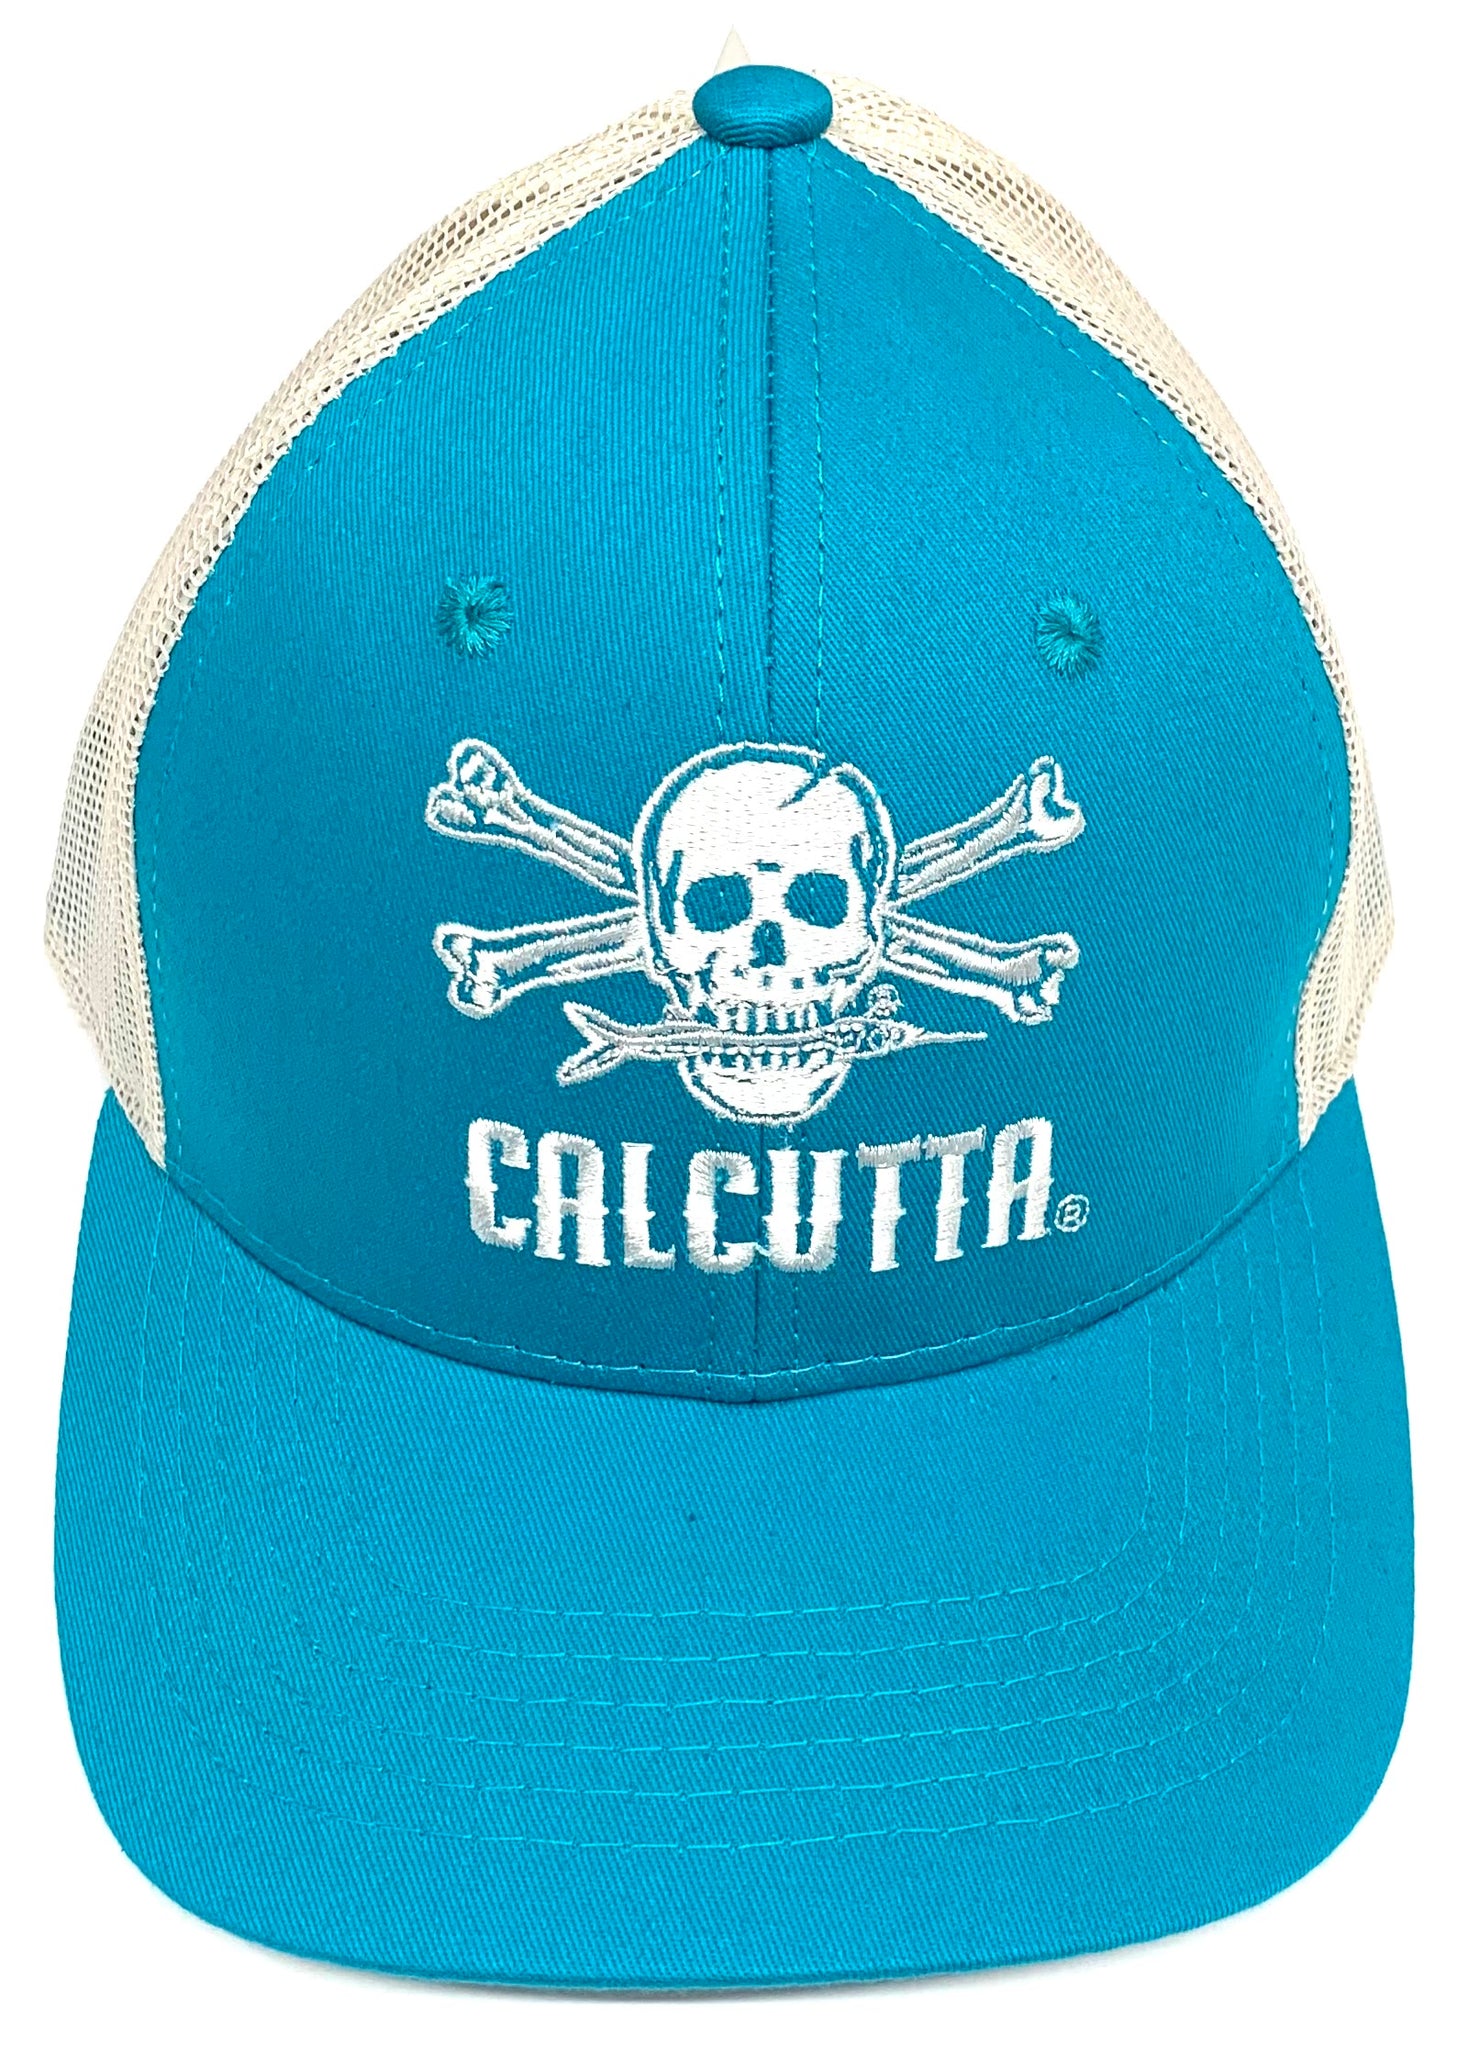 Calcutta Trucker Hats – Clearlake Bait & Tackle